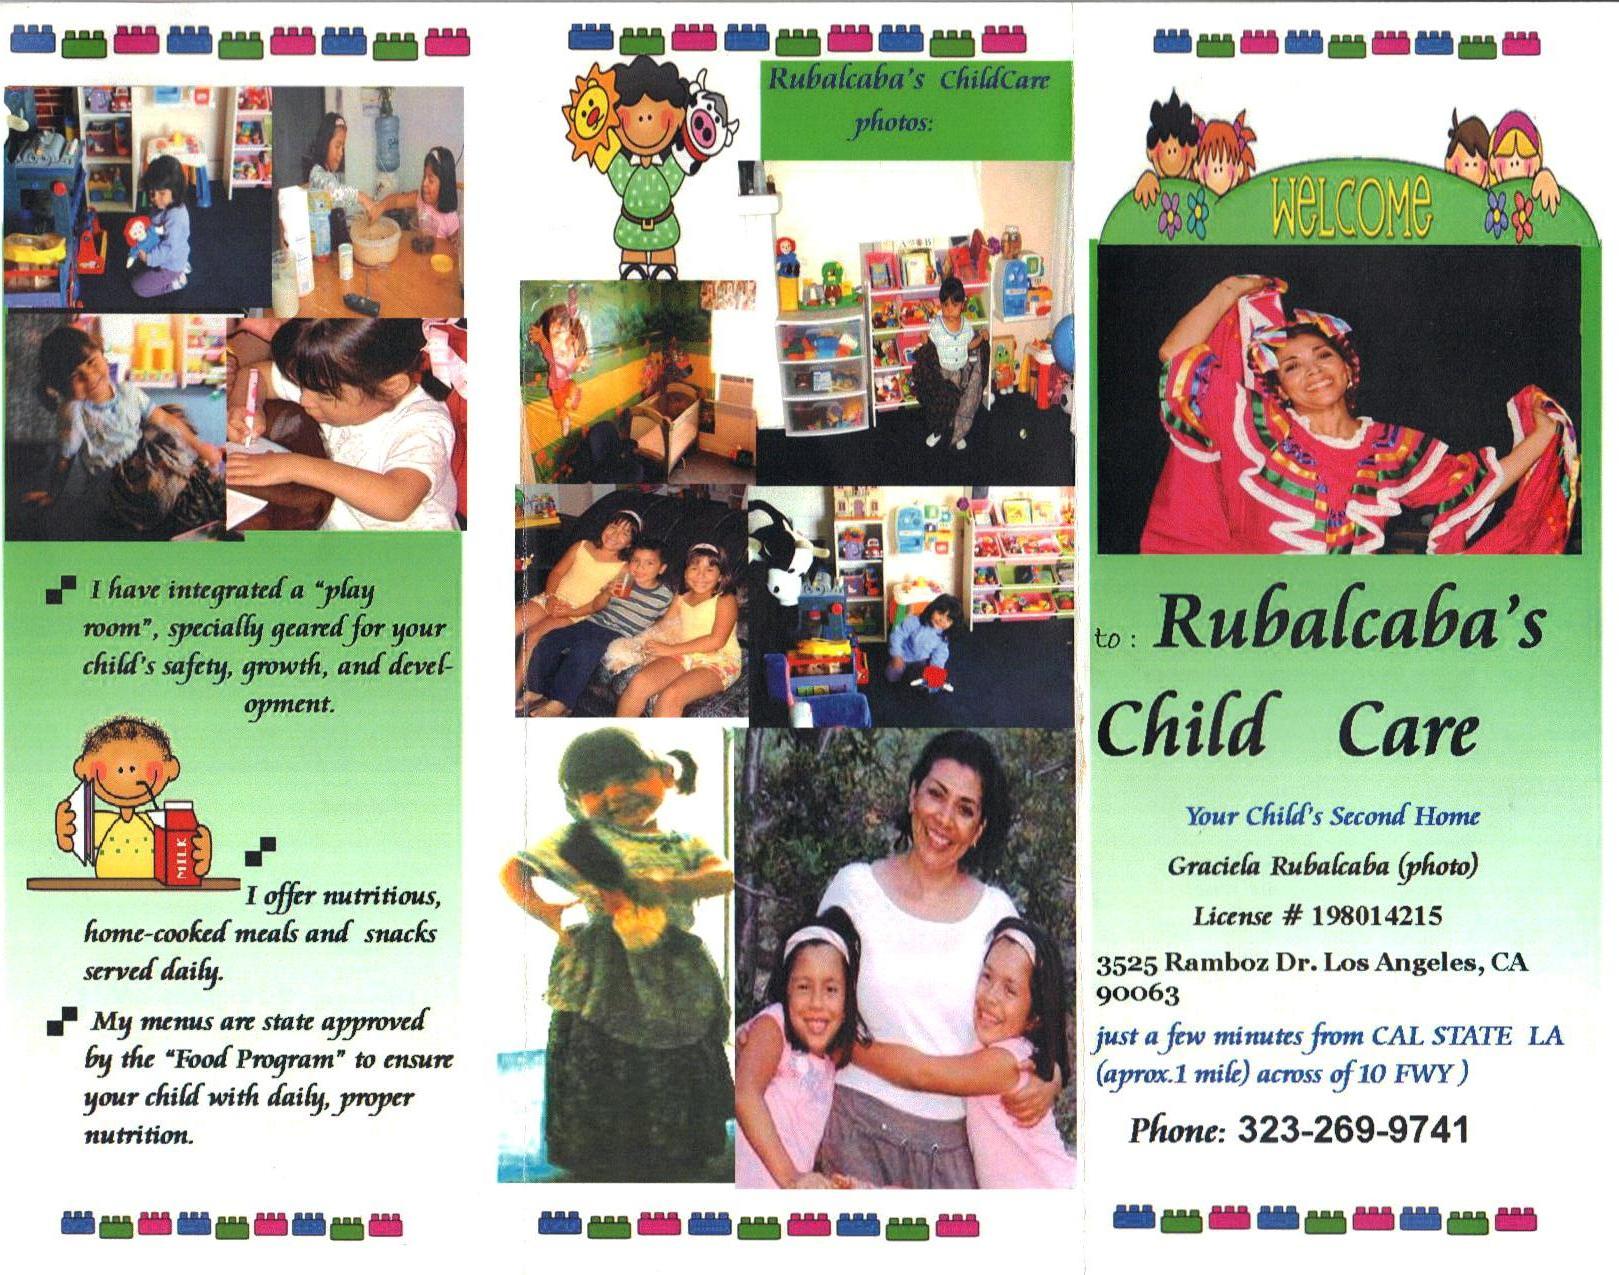 RUBALCABA FAMILY CHILD CARE  LOS ANGELES CA FAMILY DAY 